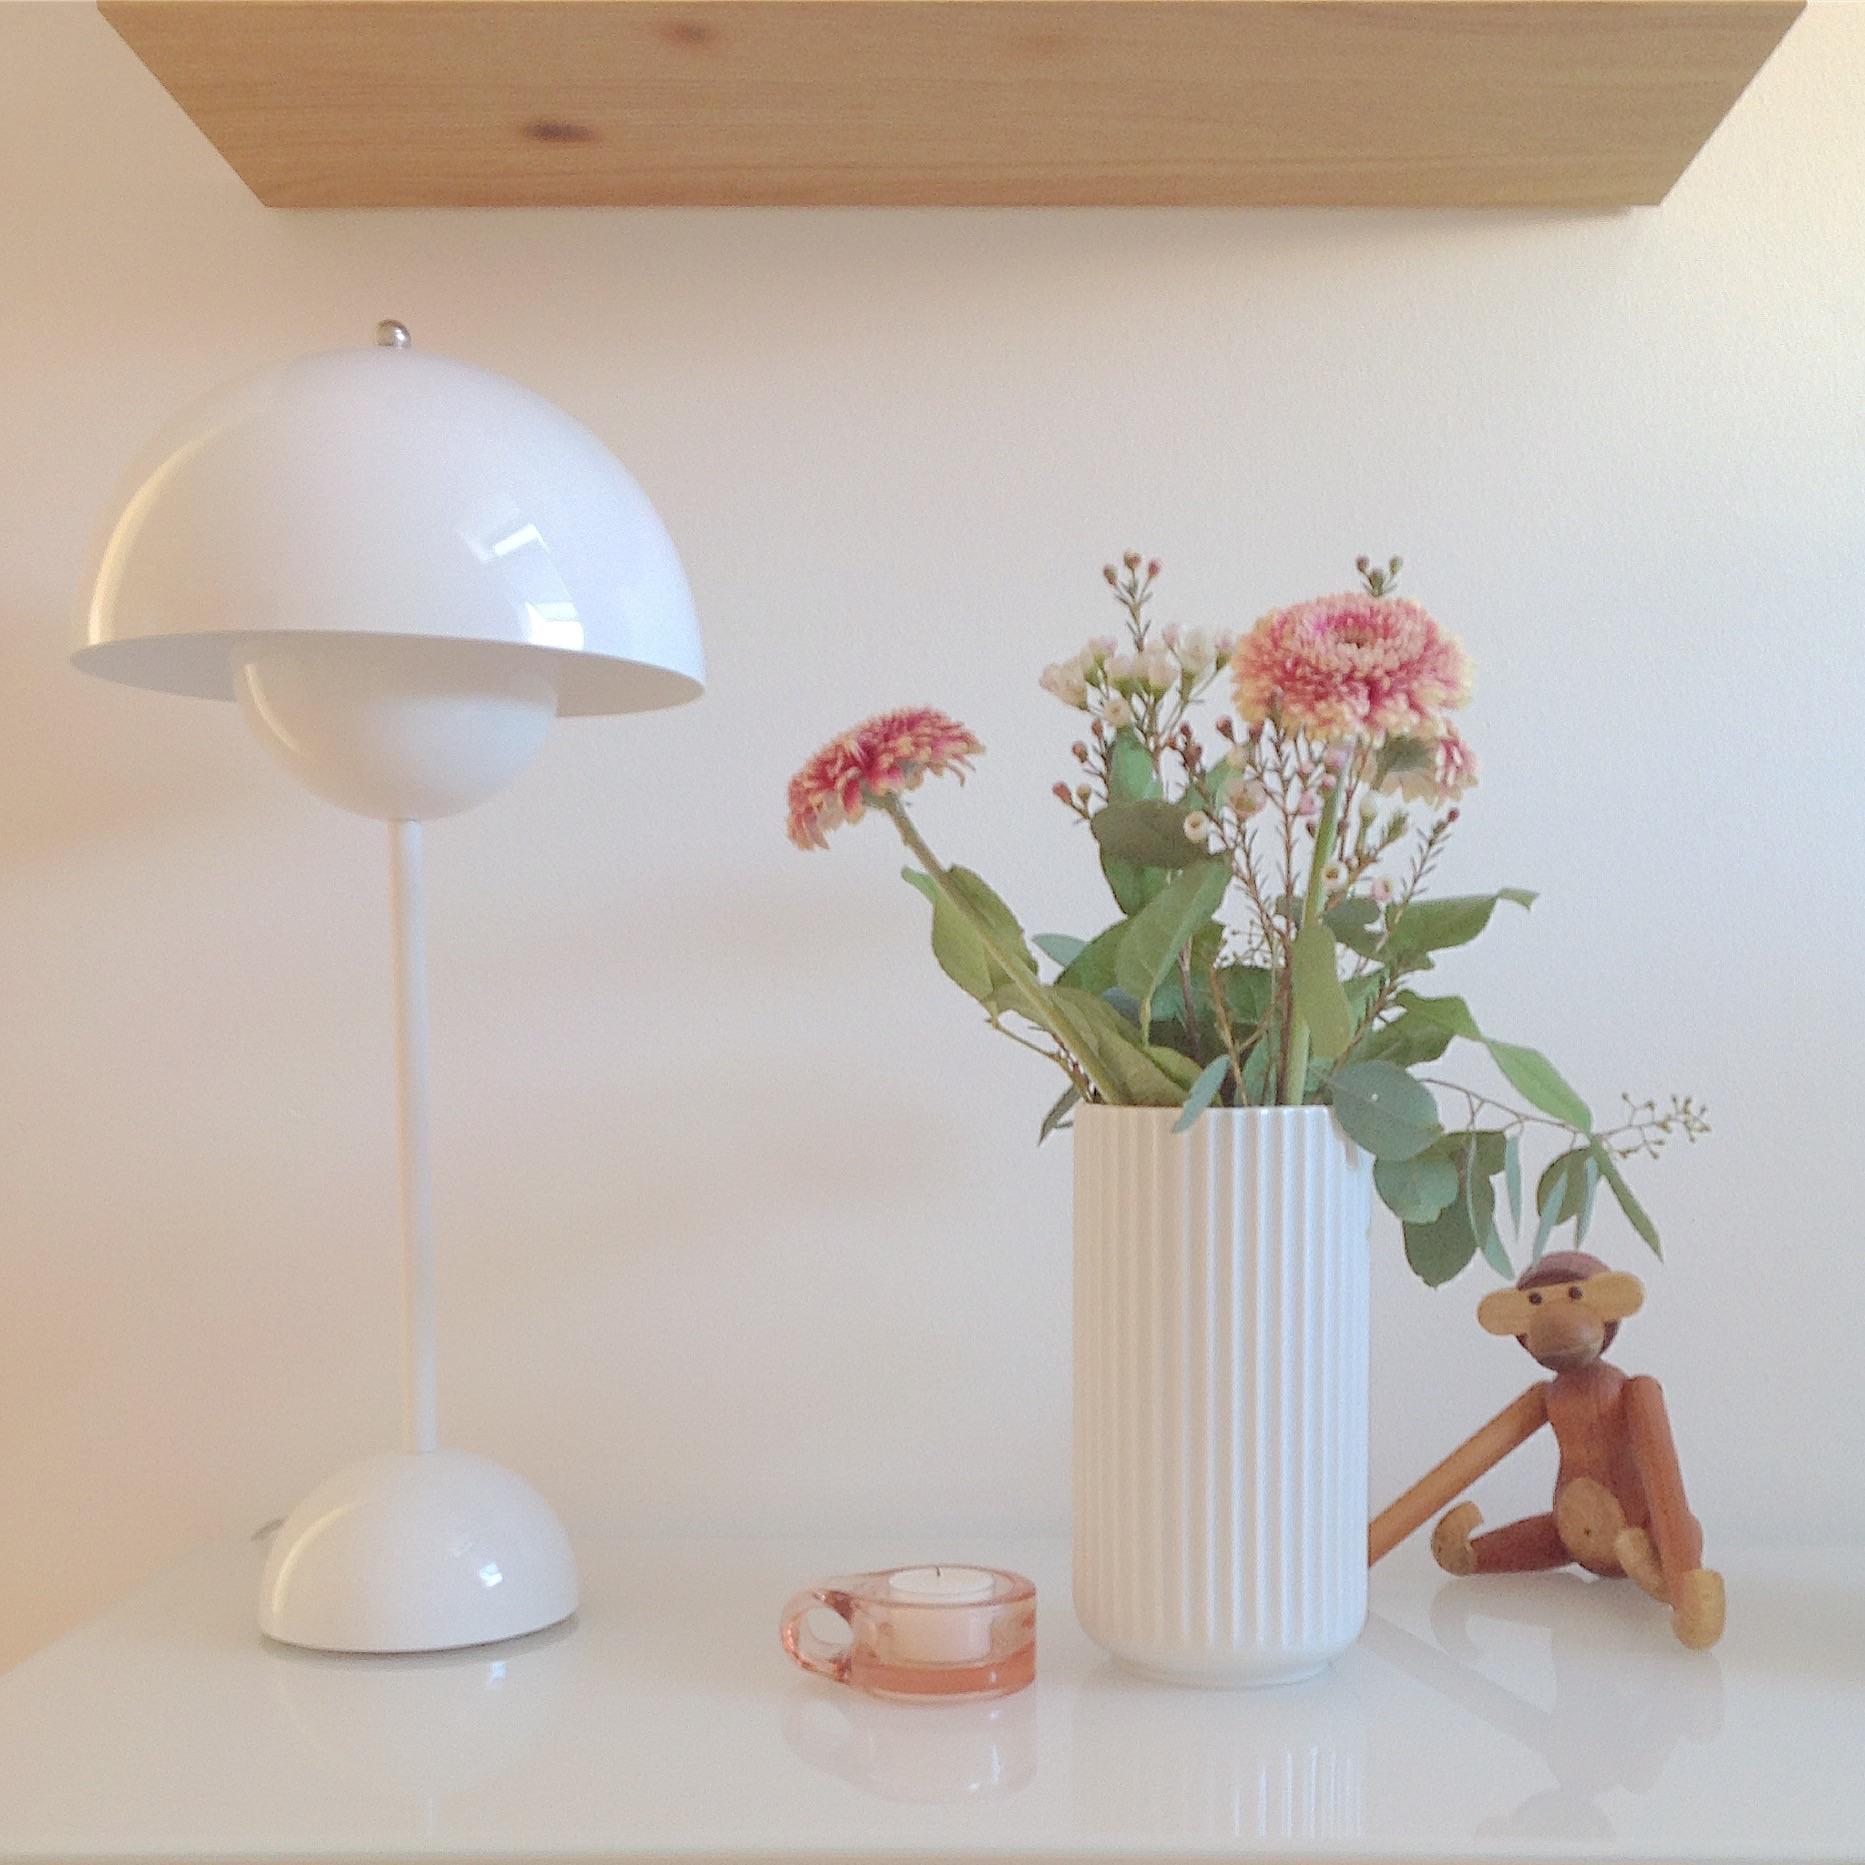 Stillleben auf dem Sideboard #Vase #Blumen #Lampe #Living #Skandinavisch #Flur #Dekoration #